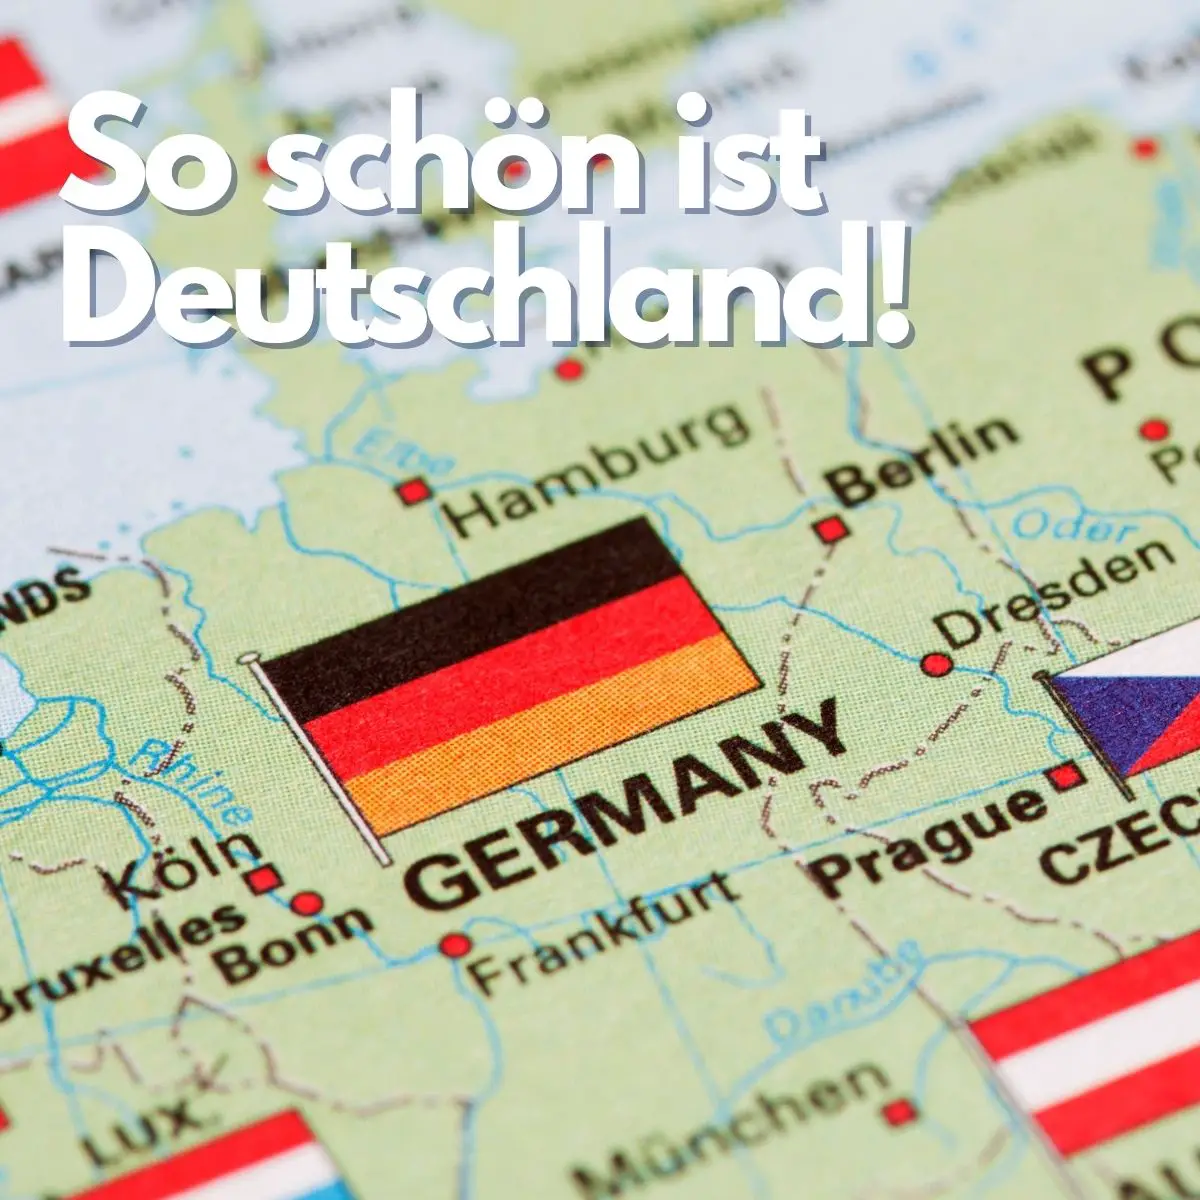 Englische Landkarte. Die Deutsche Flagge ist über dem Wort Germany. Darüber steht "So schön ist Deutschland!"